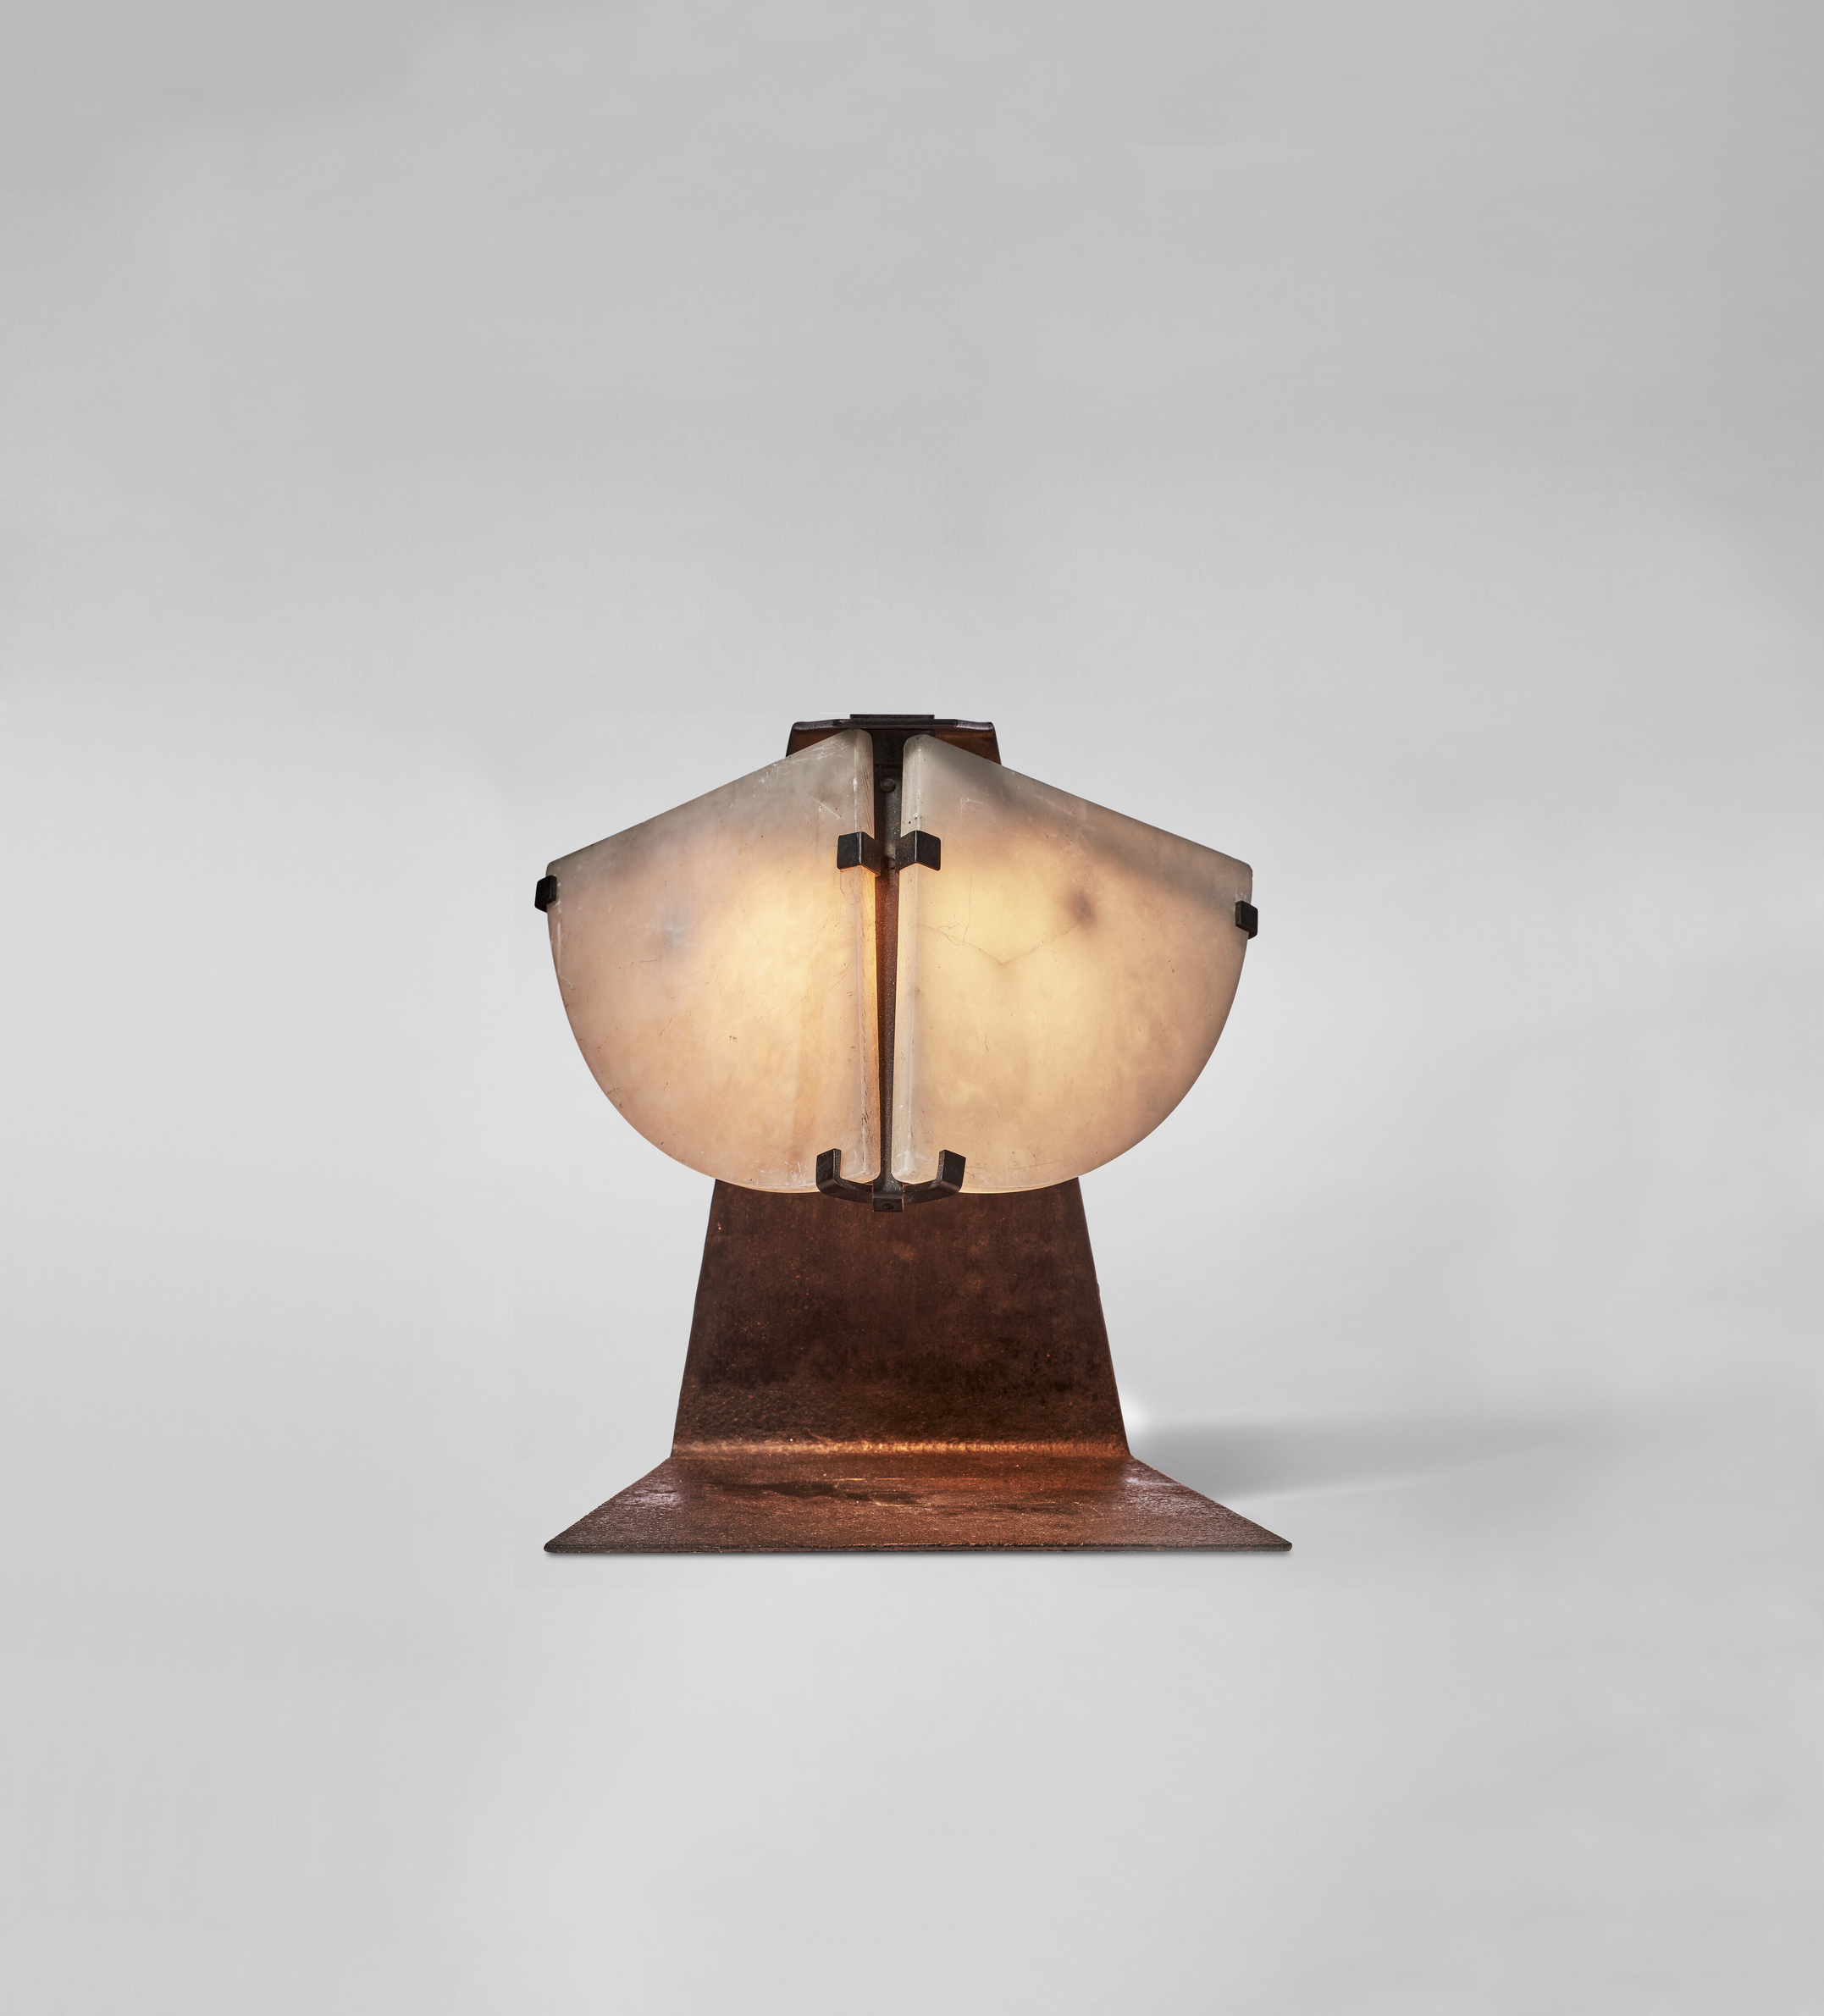 Pierre Chareau, “Masque” Lamp, vue 02